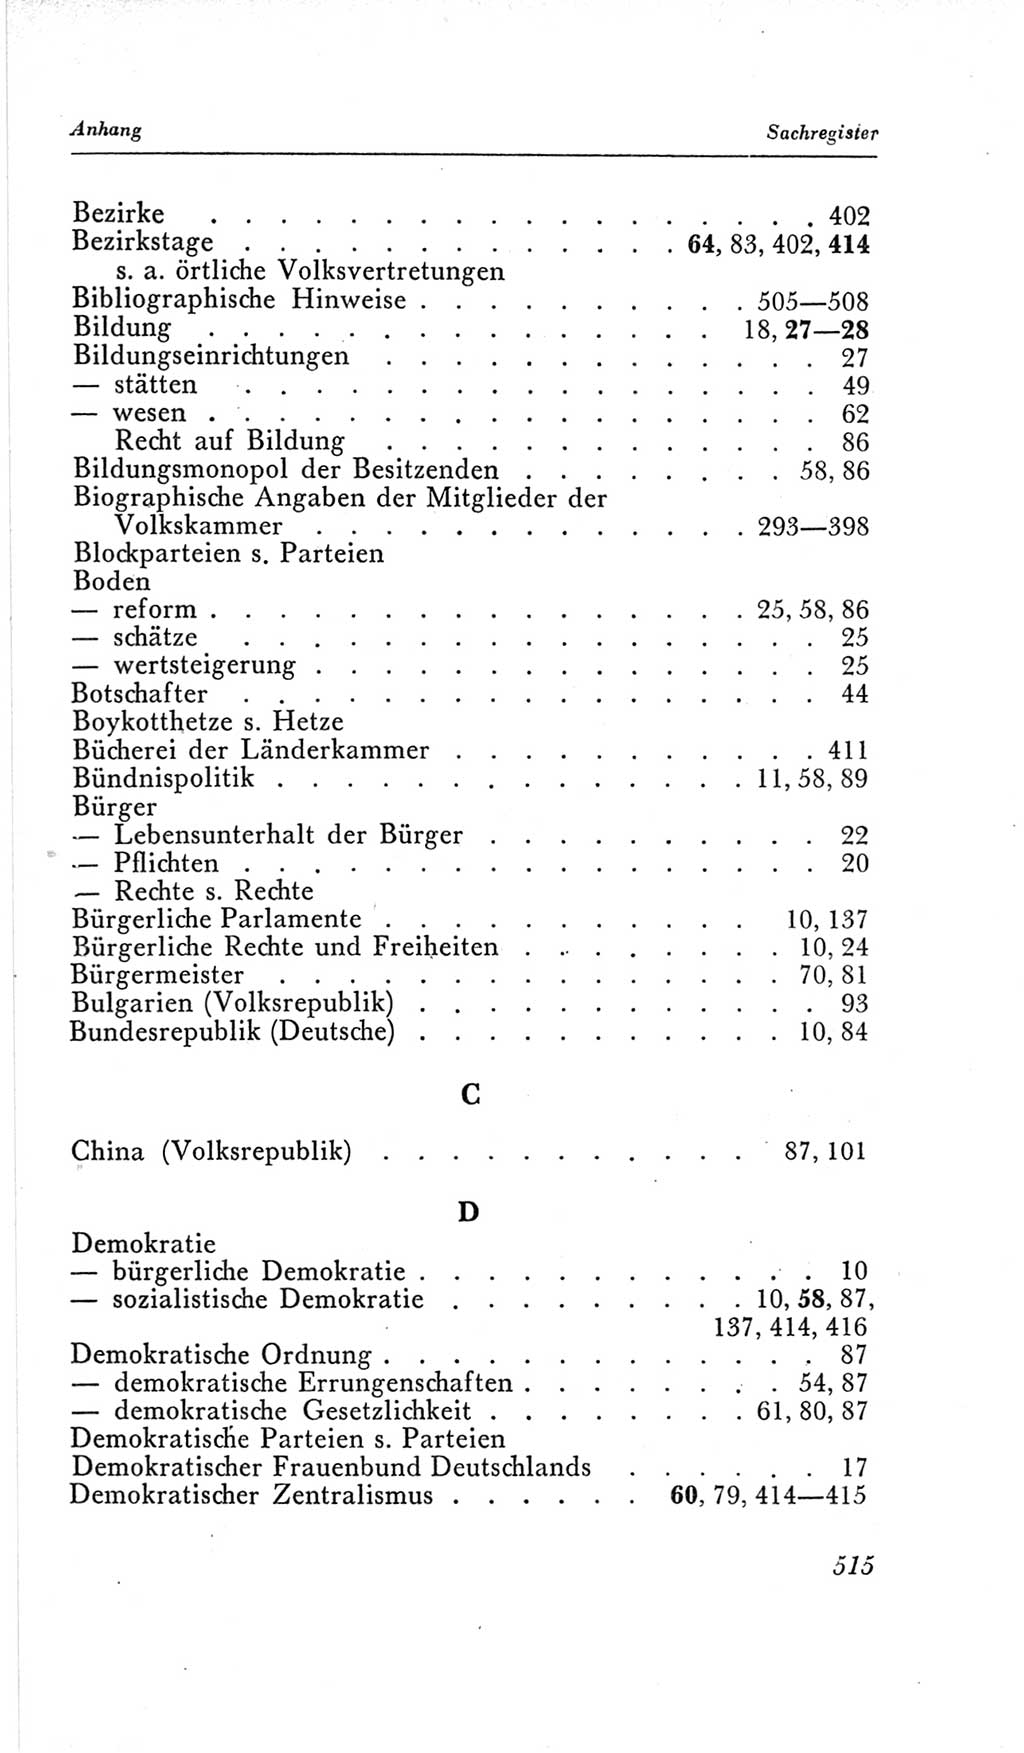 Handbuch der Volkskammer (VK) der Deutschen Demokratischen Republik (DDR), 2. Wahlperiode 1954-1958, Seite 515 (Hdb. VK. DDR, 2. WP. 1954-1958, S. 515)